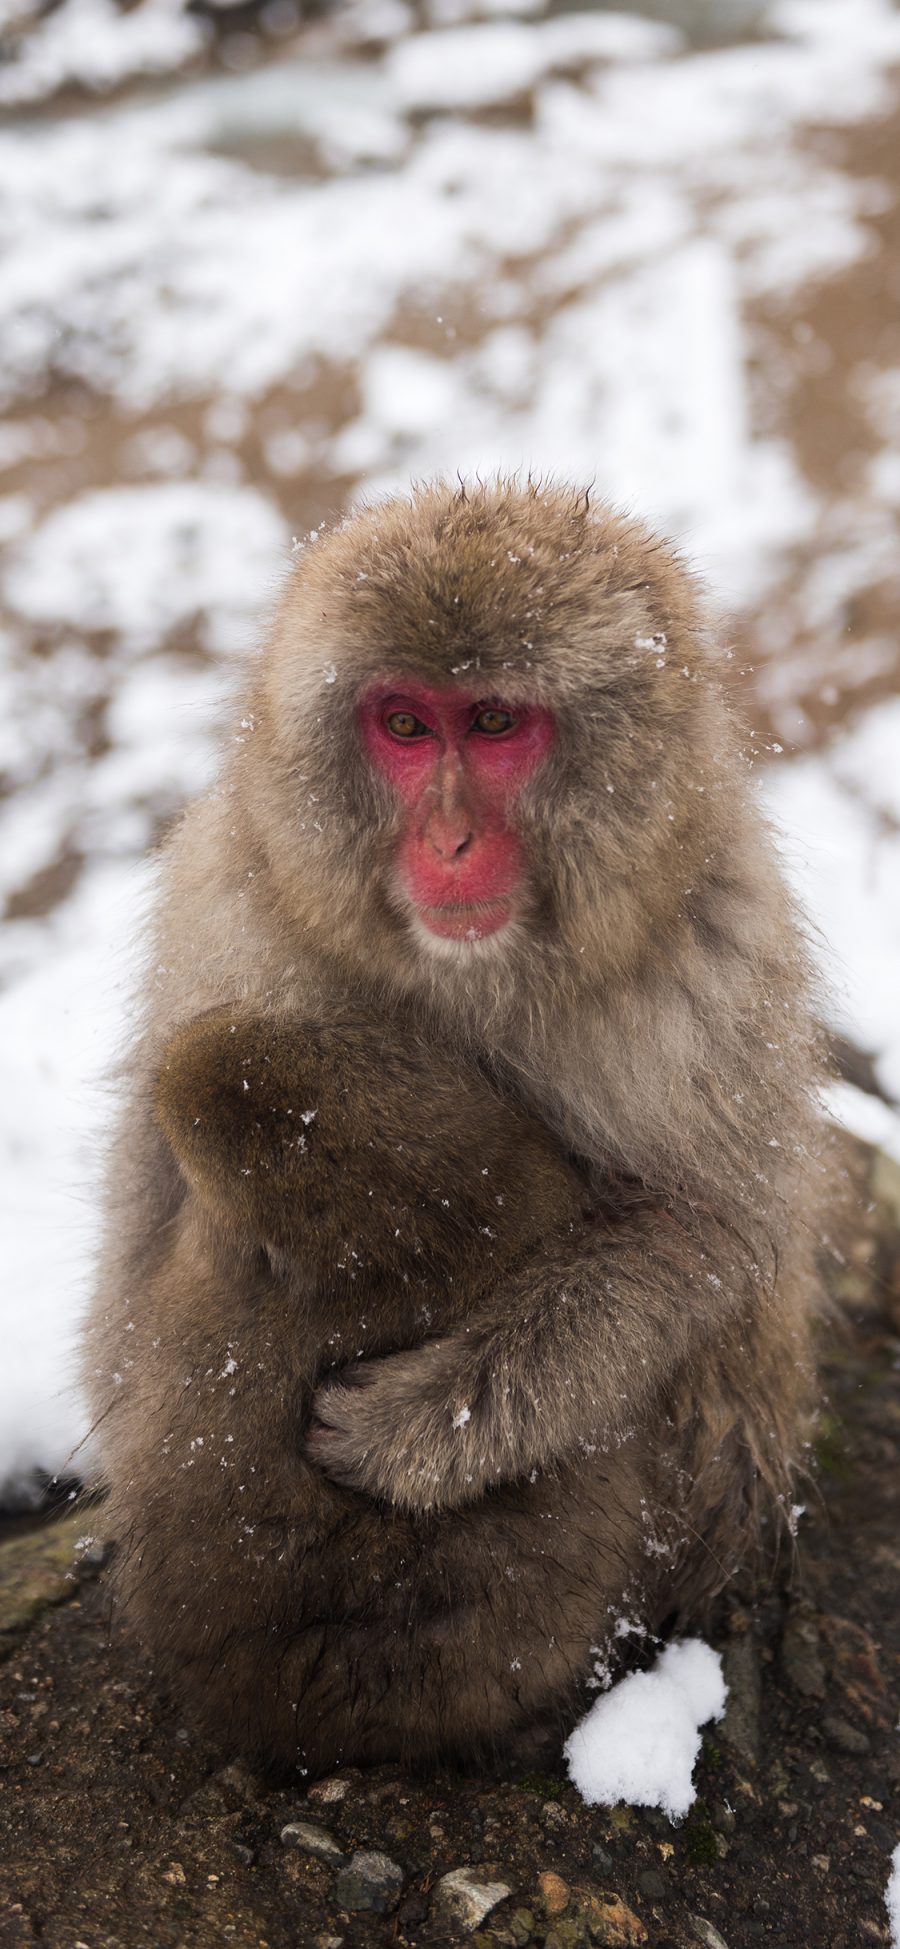 [2436×1125]保护动物 猕猴 静坐 红脸 苹果手机壁纸图片